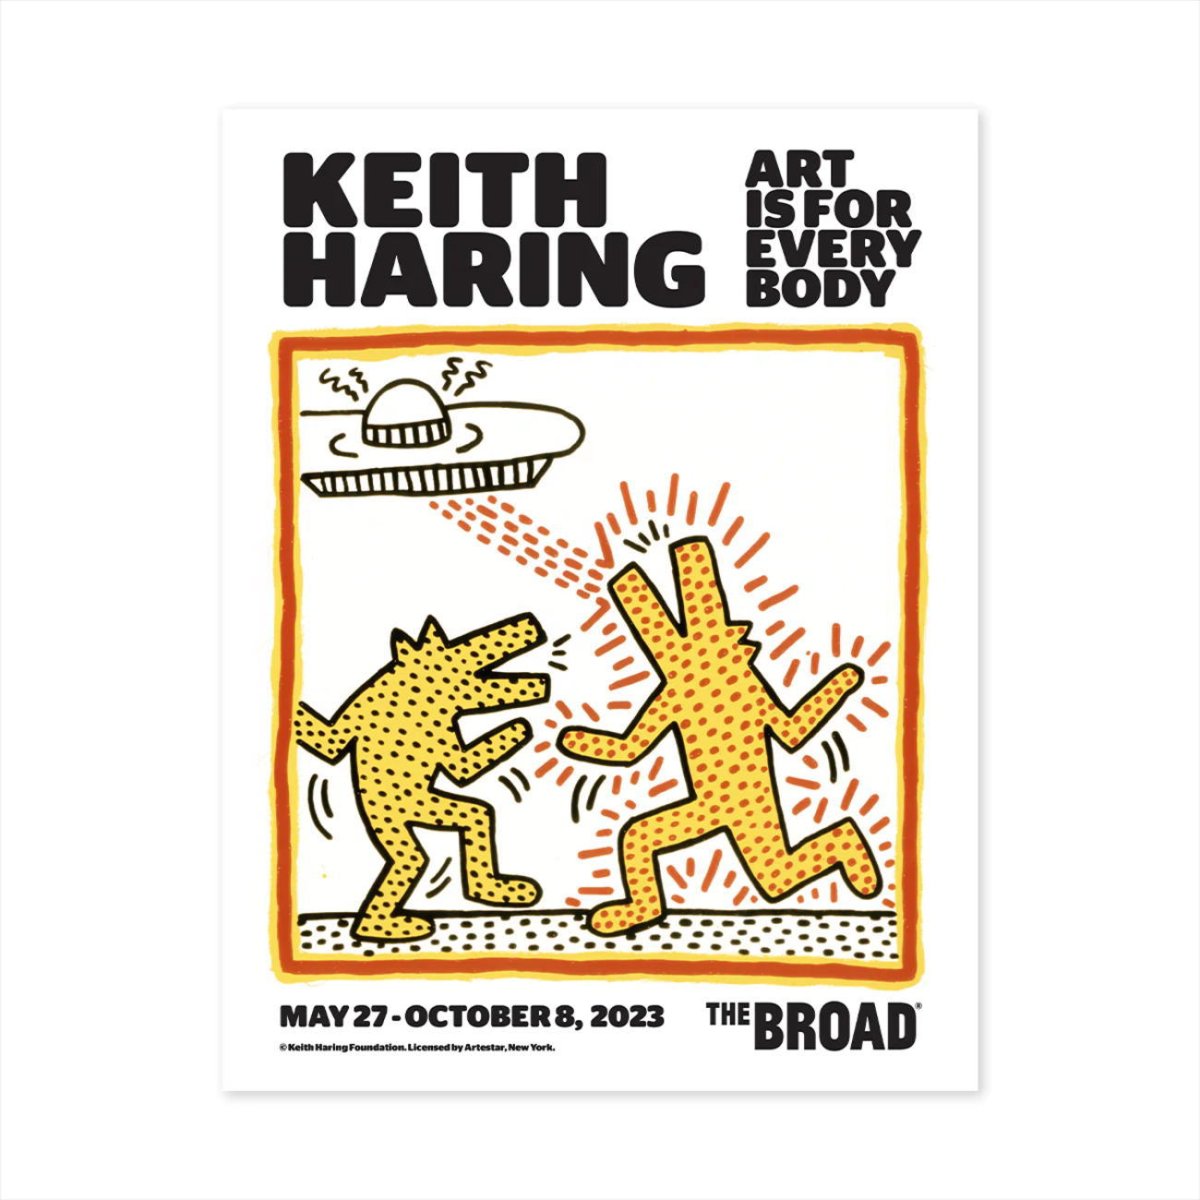 キース・ヘリング アート ポストカード 絵はがき Art Is for Everybody キースへリング大回顧展 The Broad 美術館  Keith Haring Postcard - FAR-OUT